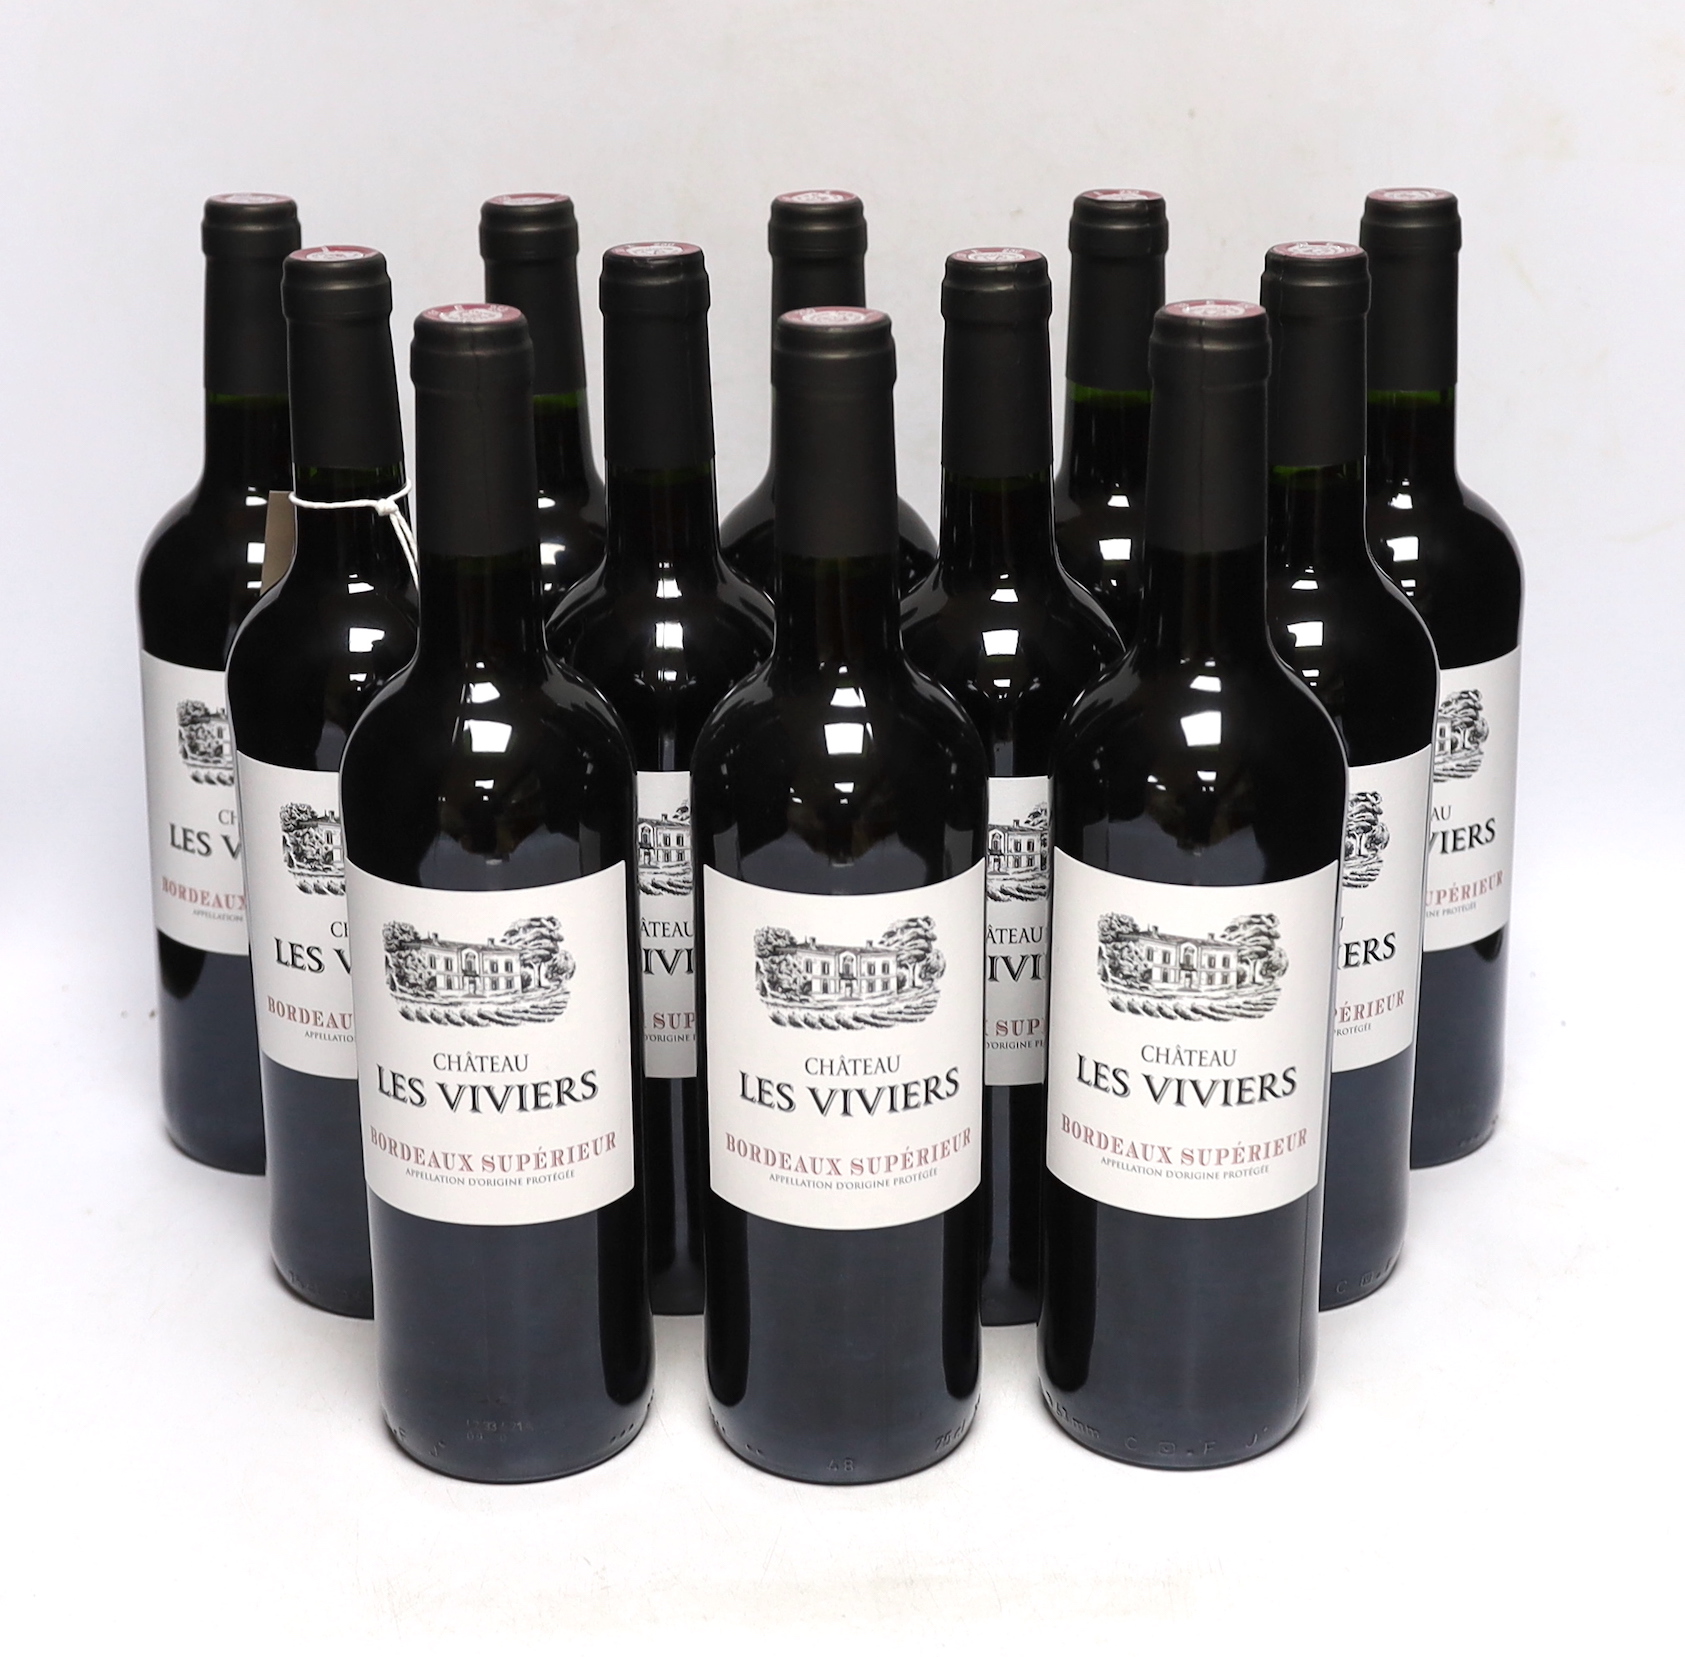 Twelve bottles of Chateau Les Vivers 2021